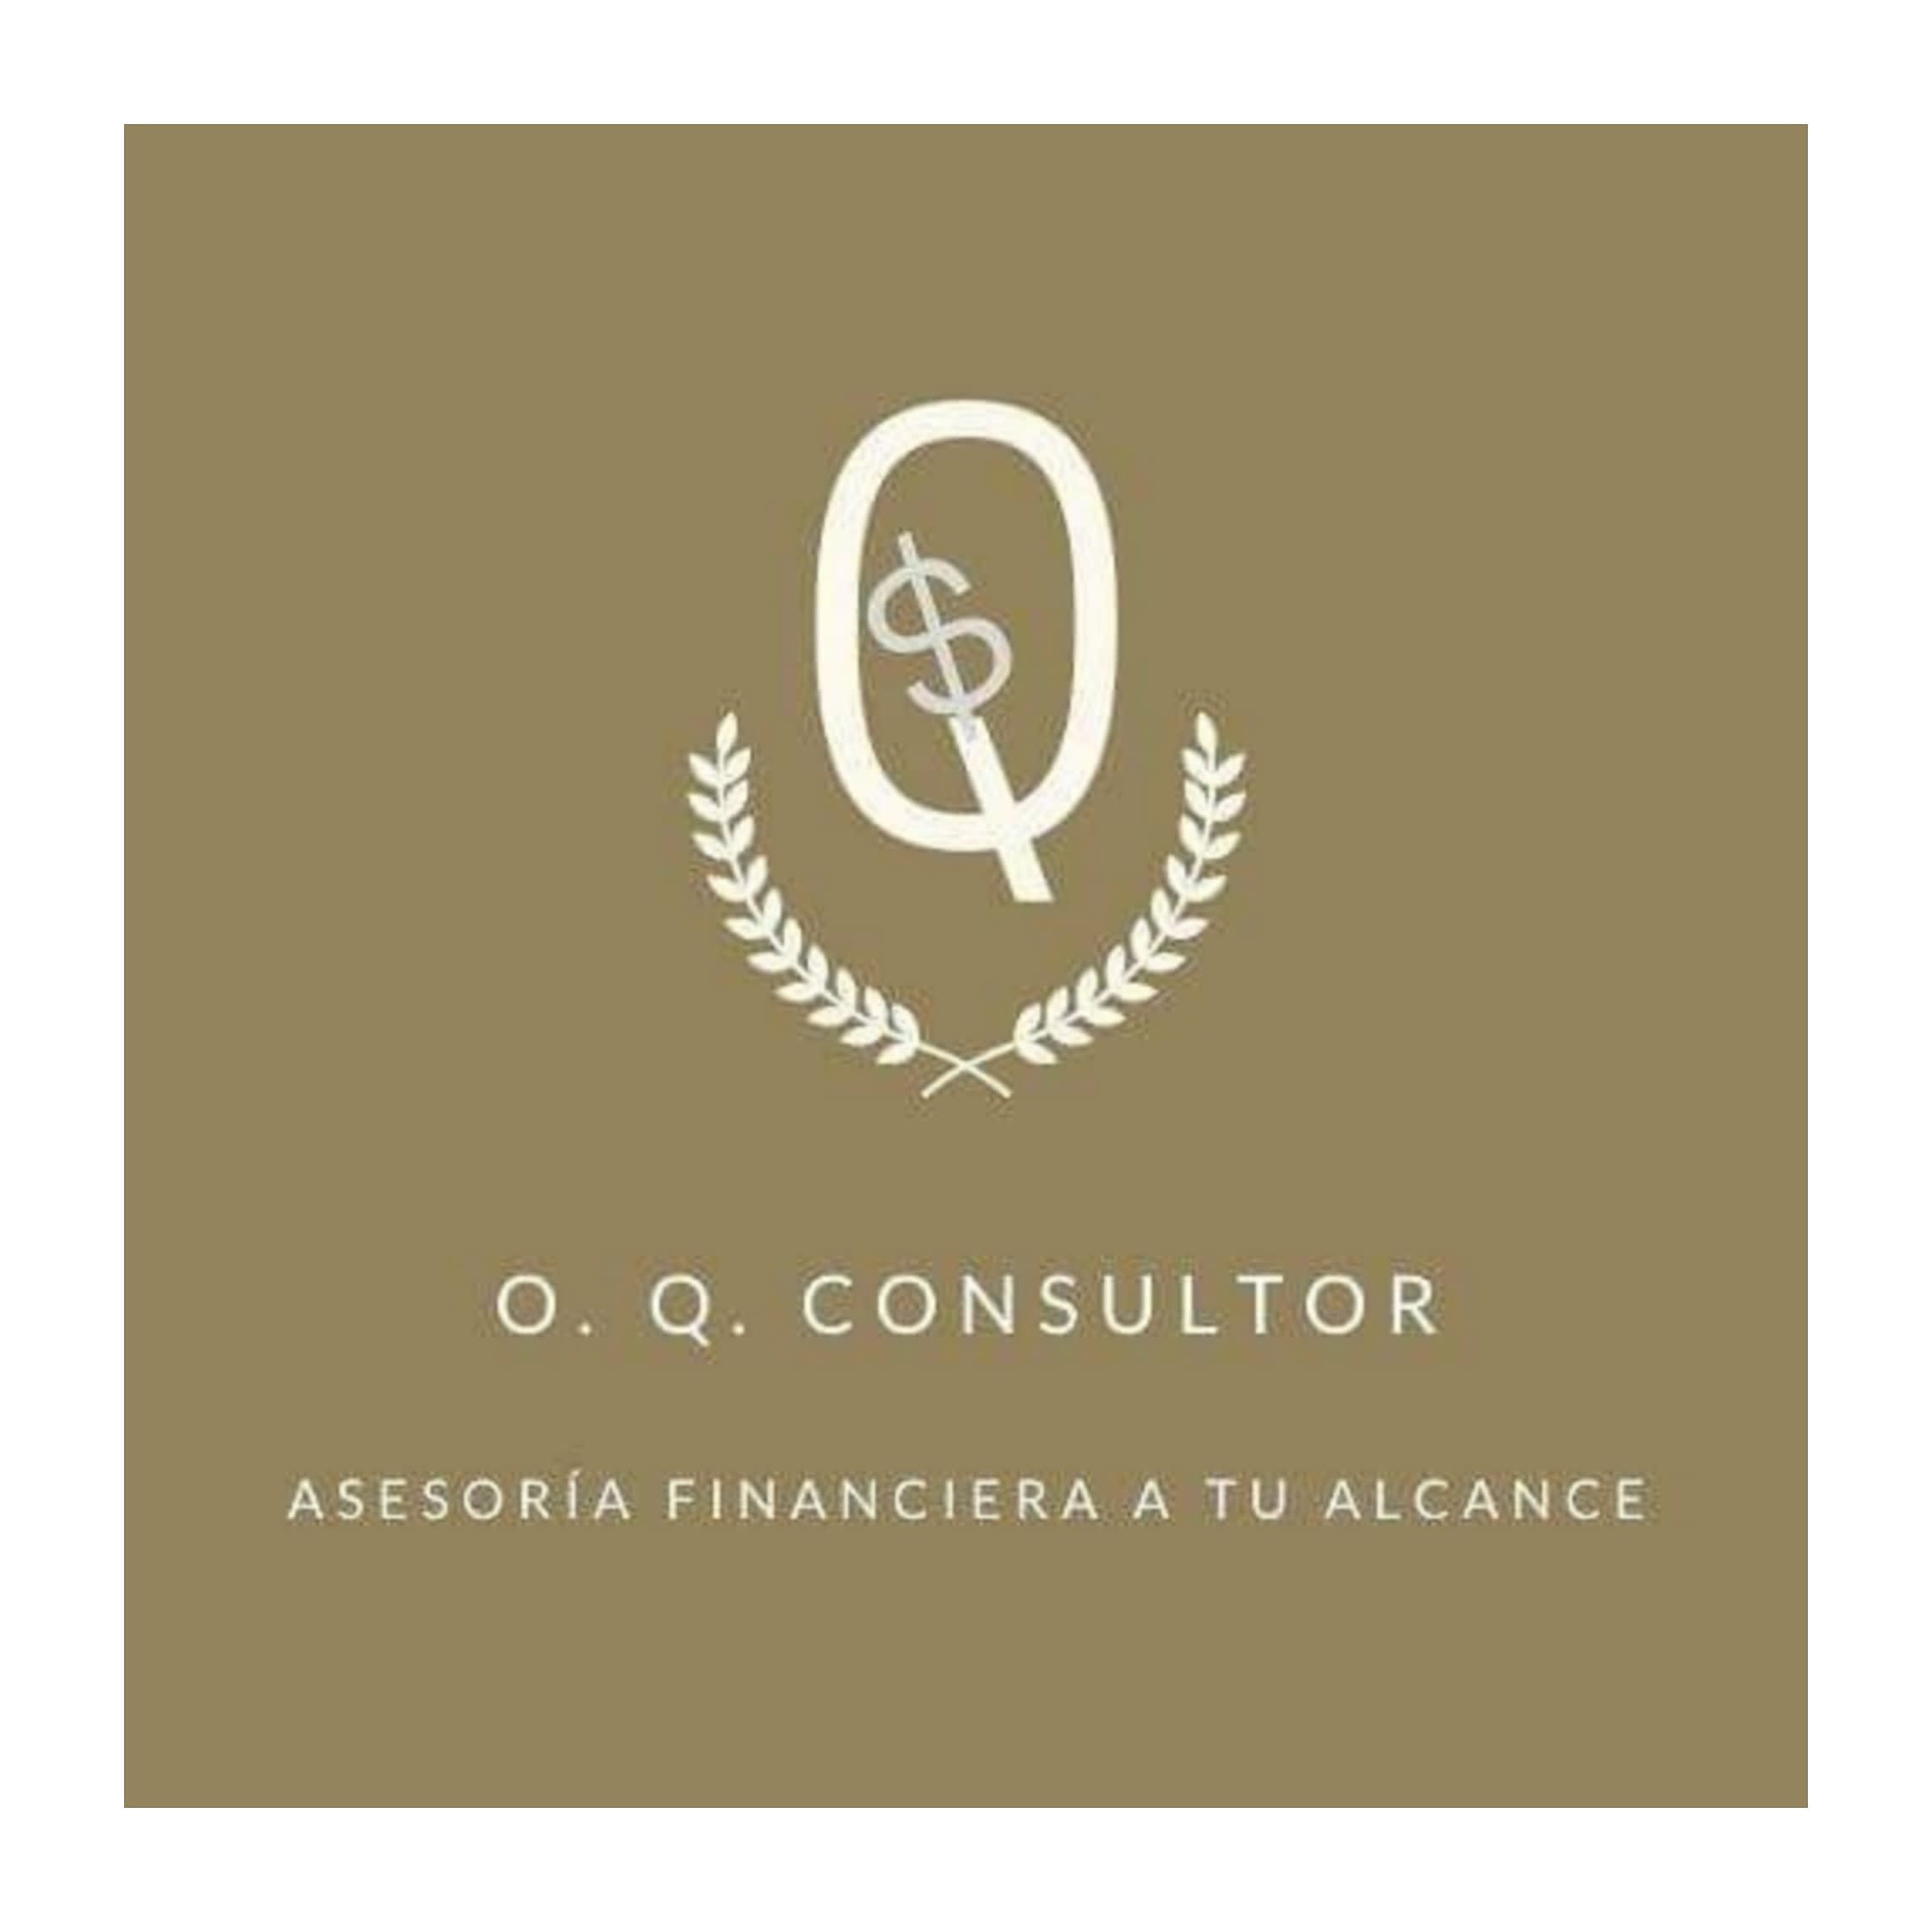 O. Q. Consultor